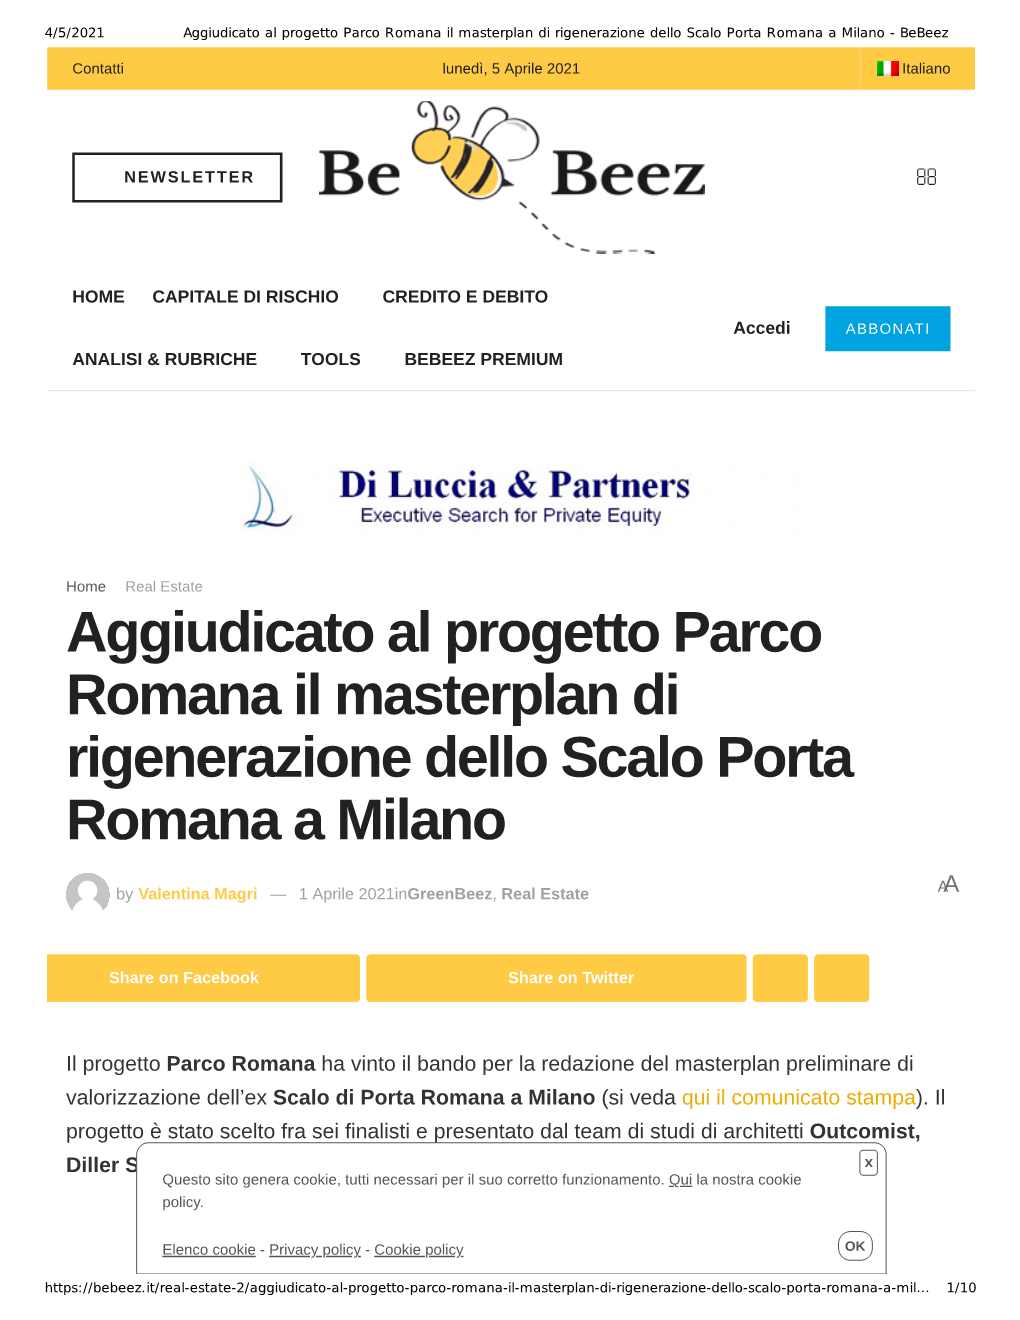 Aggiudicato Al Progetto Parco Romana Il Masterplan Di Rigenerazione Dello Scalo Porta Romana a Milano - Bebeez